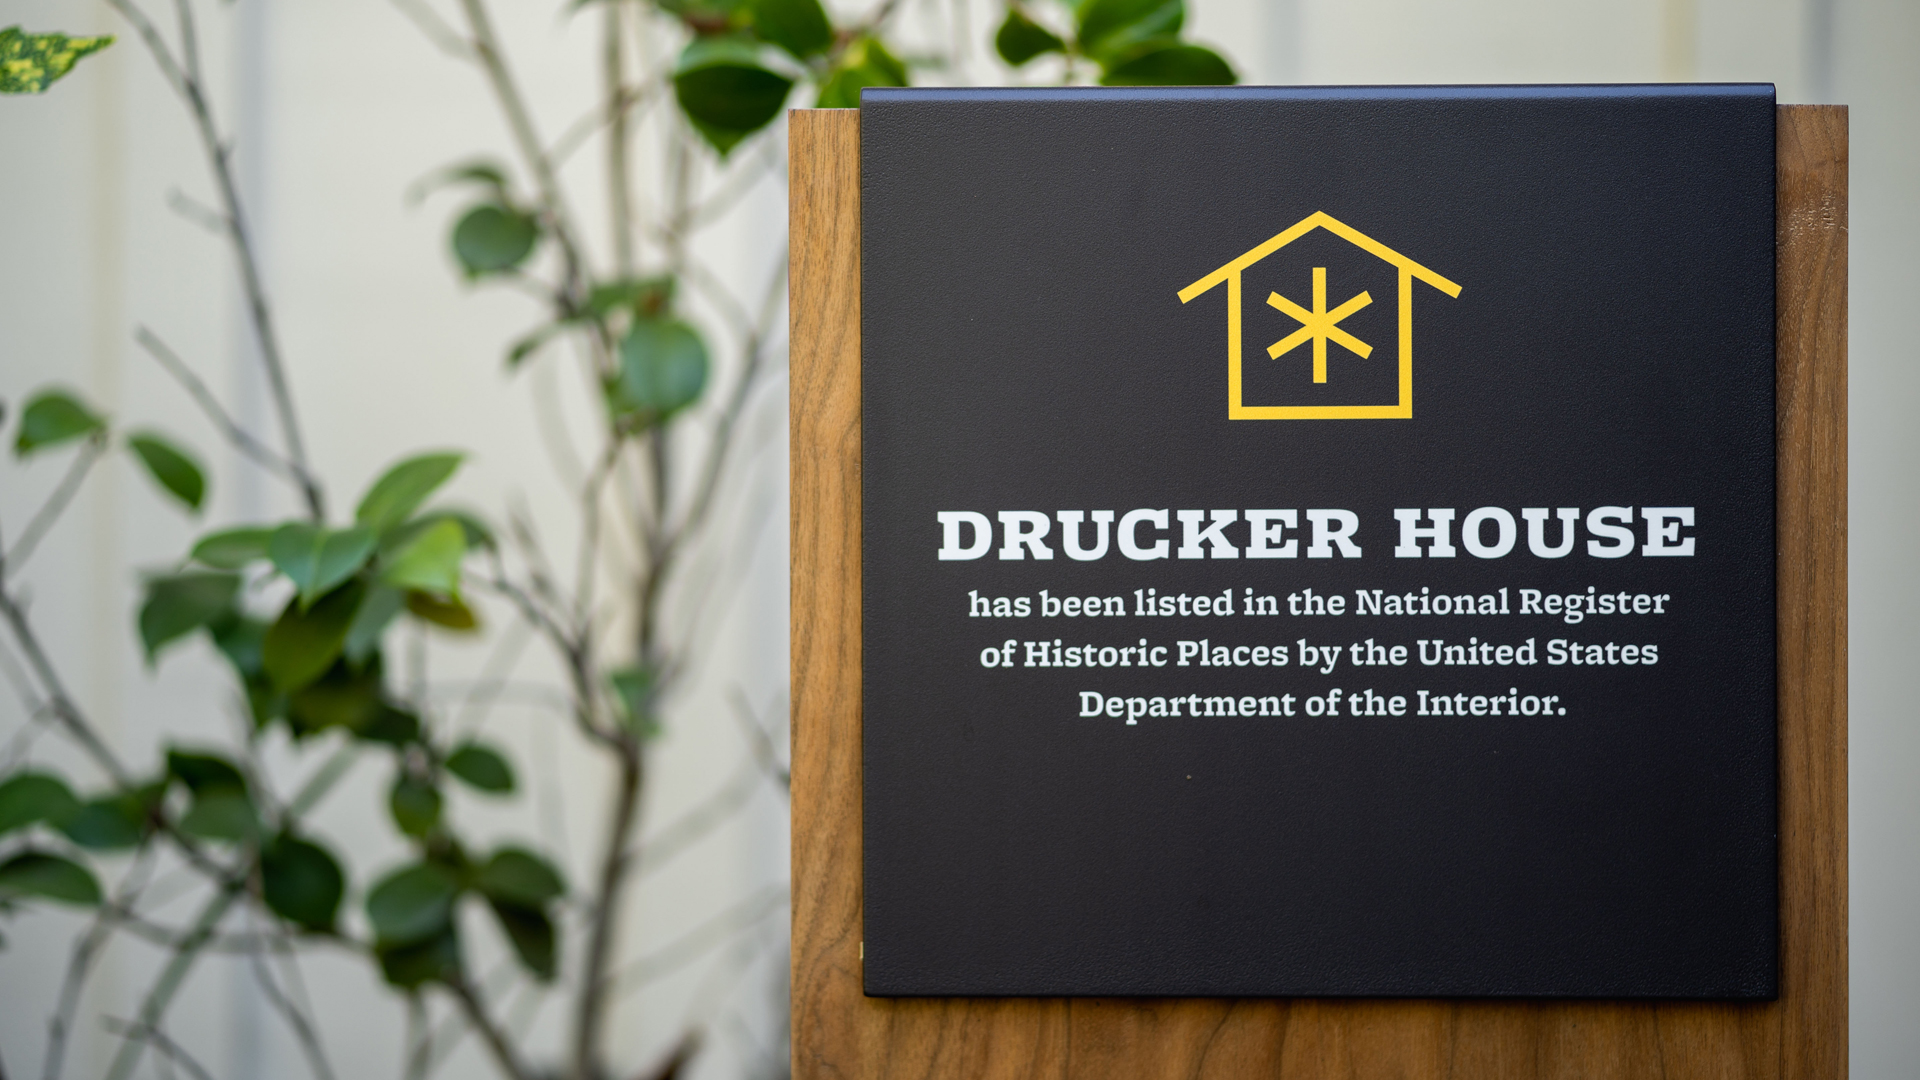 Drucker Institute brand designed by Kilter.